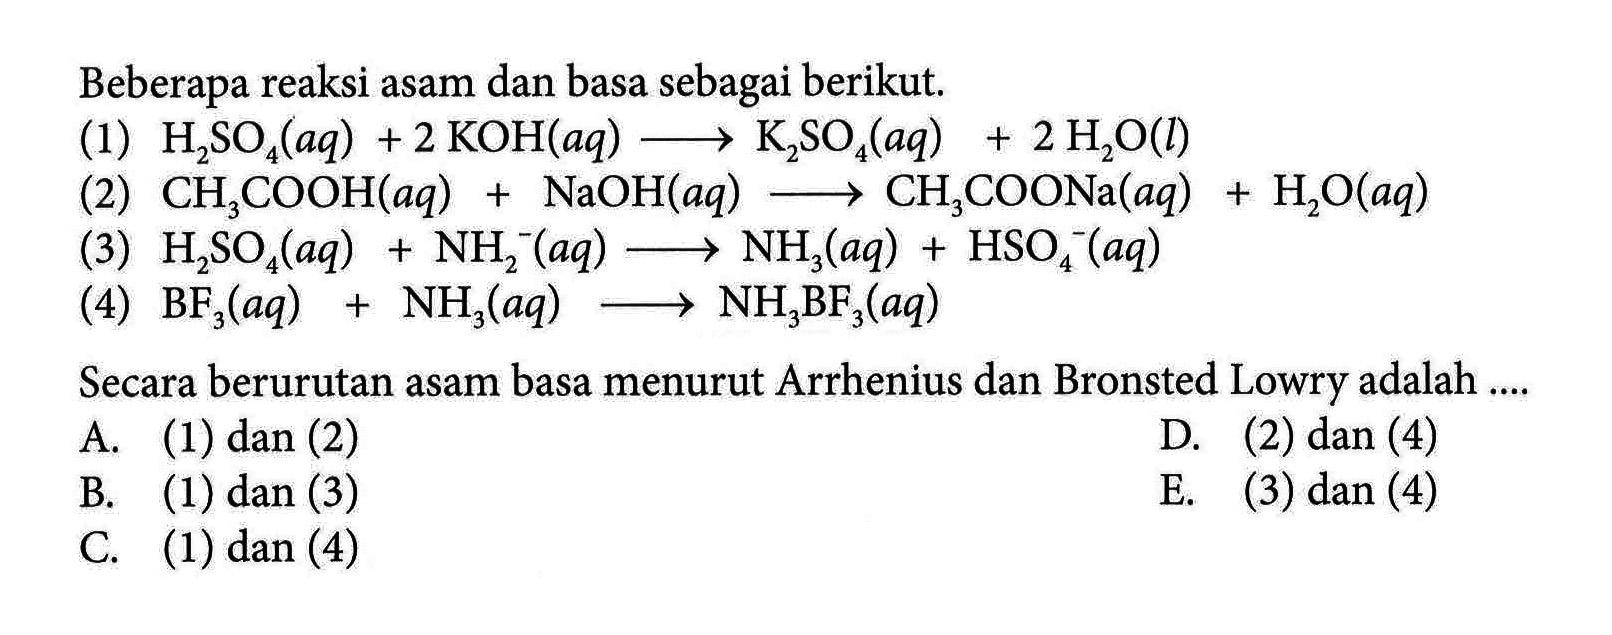 Beberapa reaksi asam dan basa sebagai berikut. 
(1) H2SO4 (aq) + 2 KOH (aq) -> K2SO4 (aq) + 2 H2O (l) 
(2) CH3COOH (aq) + NaOH (aq) -> CH3COONa (aq) +H2O (aq) 
(3) H2SO4 (aq) + NH2^- (aq) -> NH3 (aq) + HSO4^- (aq) 
(4) BF3 (aq) + NH3 (aq) -> NH3BF3 (aq) 
Secara berurutan asam basa menurut Arrhenius dan Bronsted Lowry adalah A. (1) dan (2) D. (2) dan (4) B. (1) dan (3) E. (3) dan (4) C. (1) dan (4)